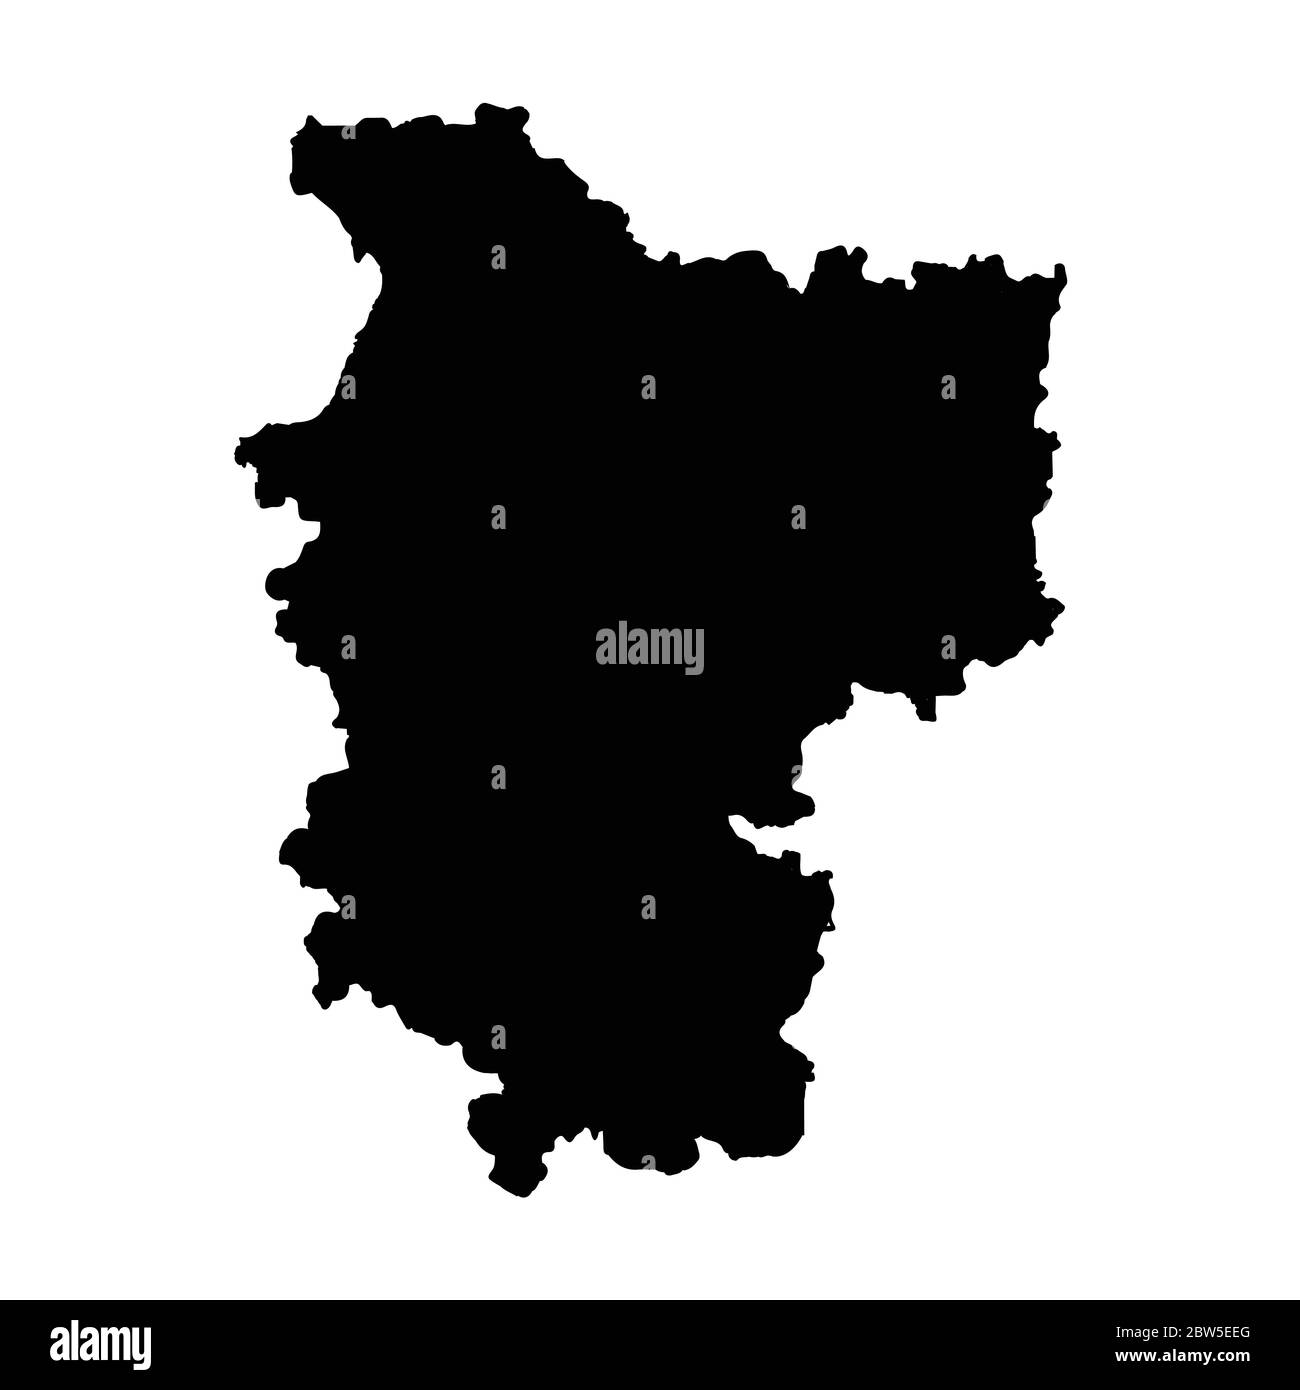 Vektorkarte Minsk Region. Isolierte Vektorgrafik. Schwarz auf weißem Hintergrund. EPS 10-Abbildung. Stock Vektor